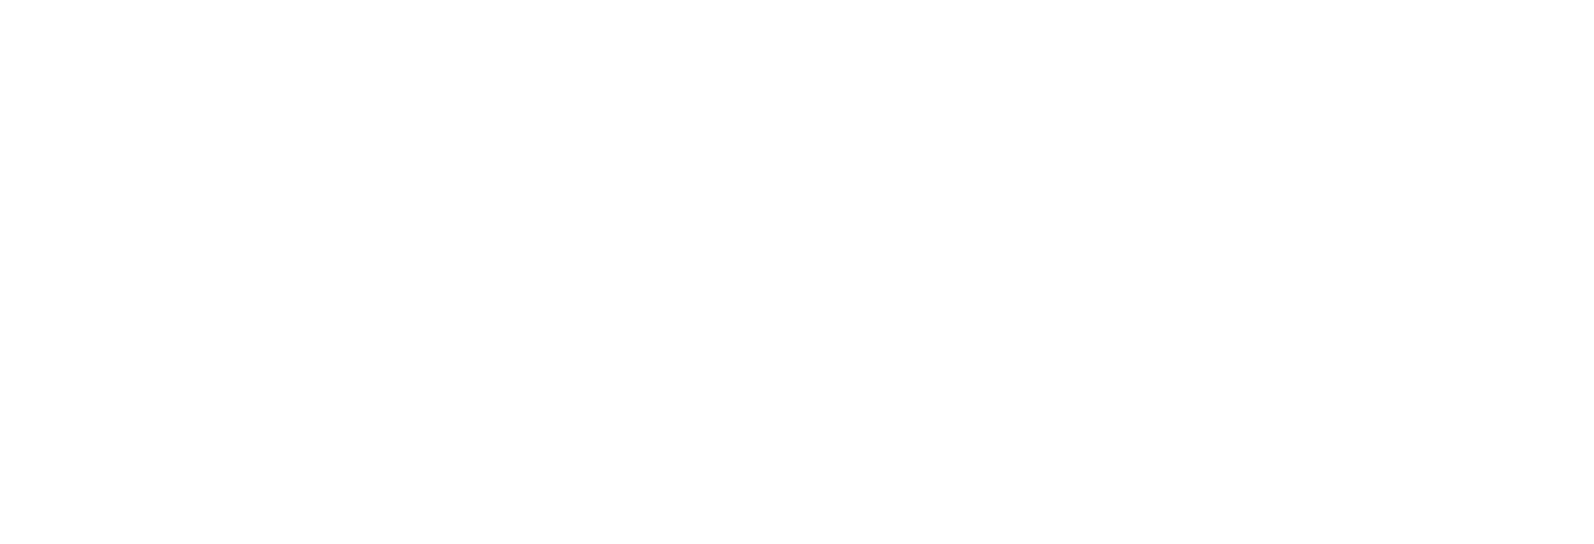 The Astronaut Description